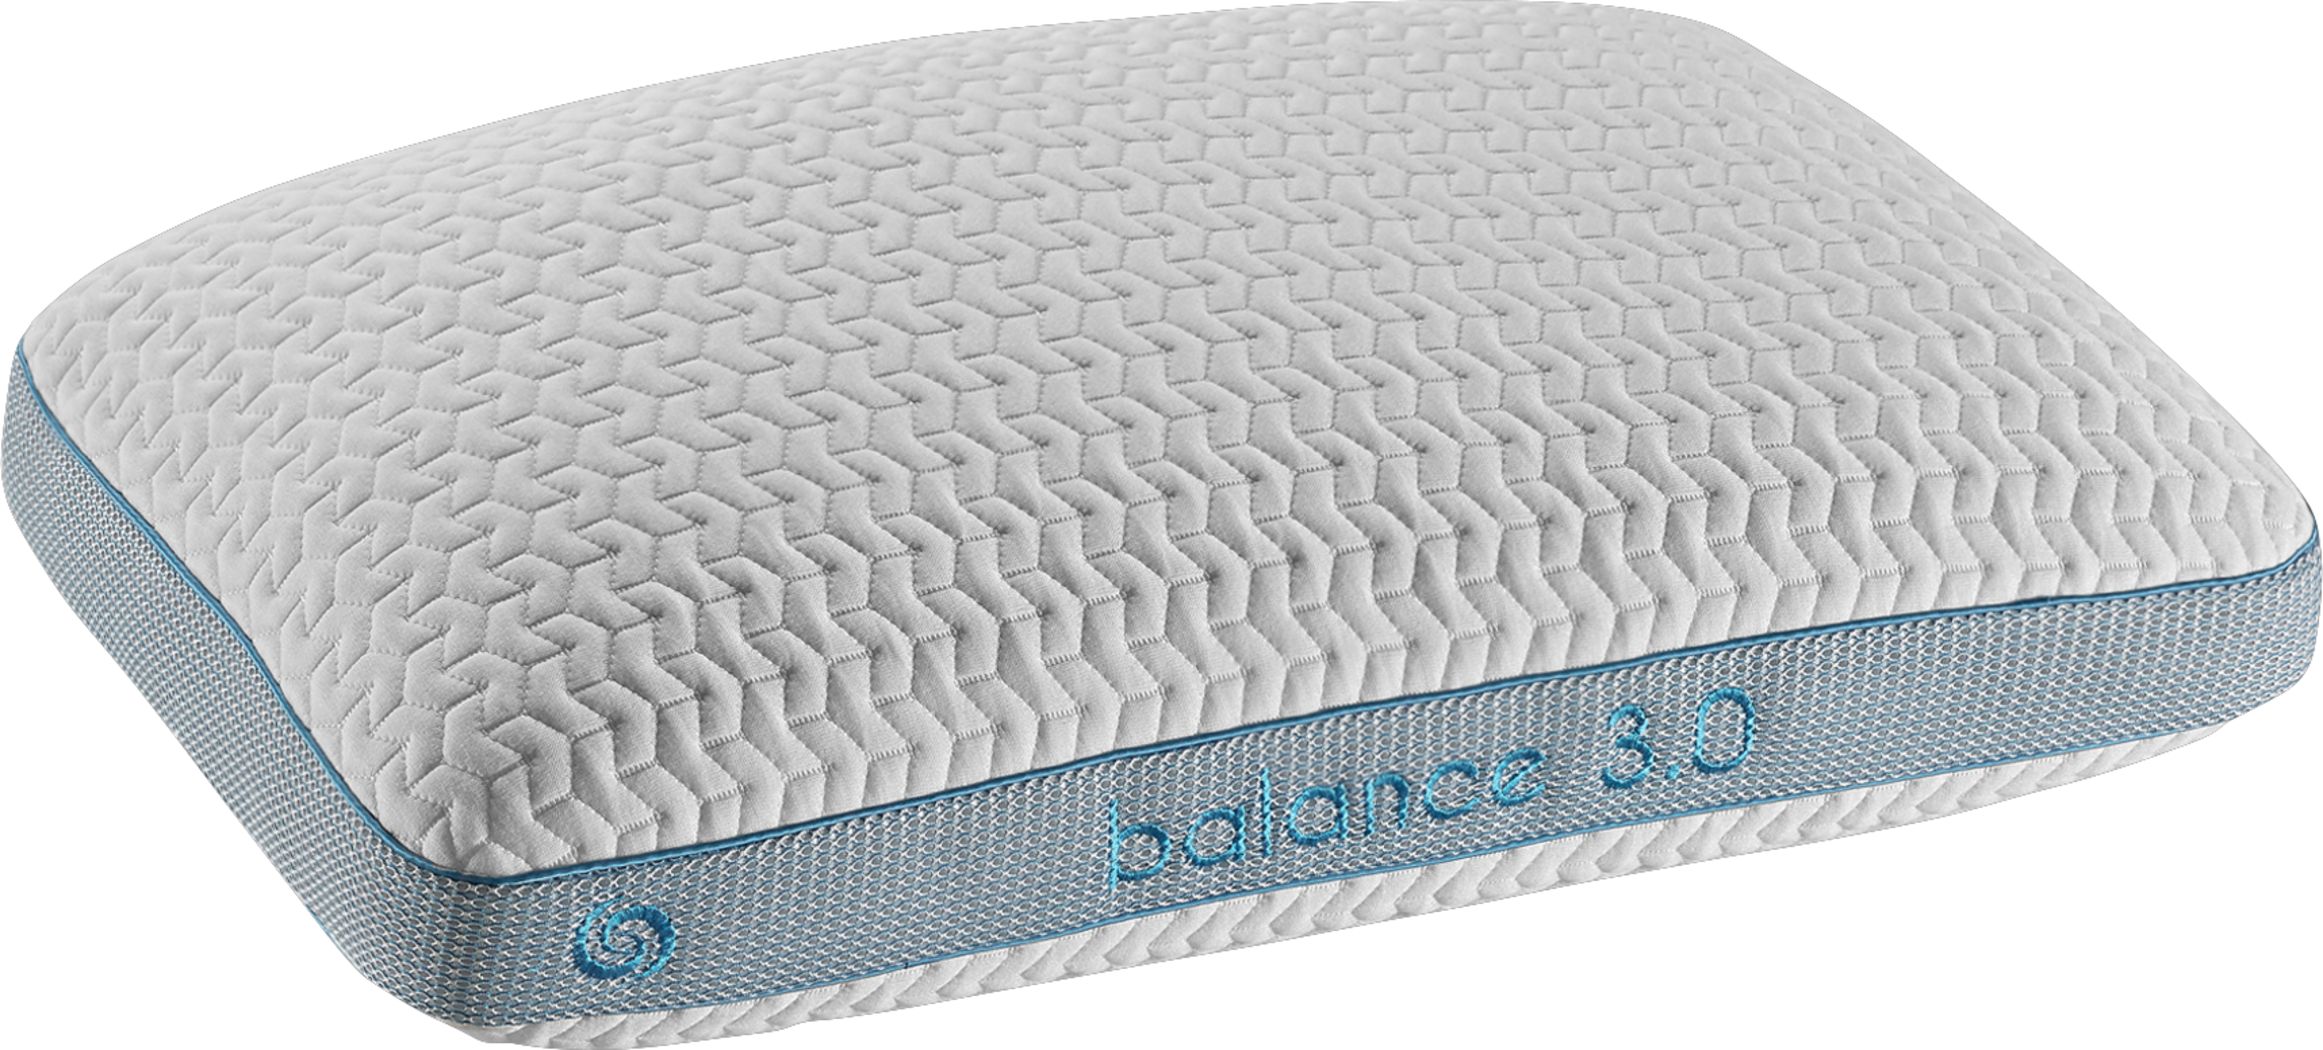 bedgear balance performance mattress topper